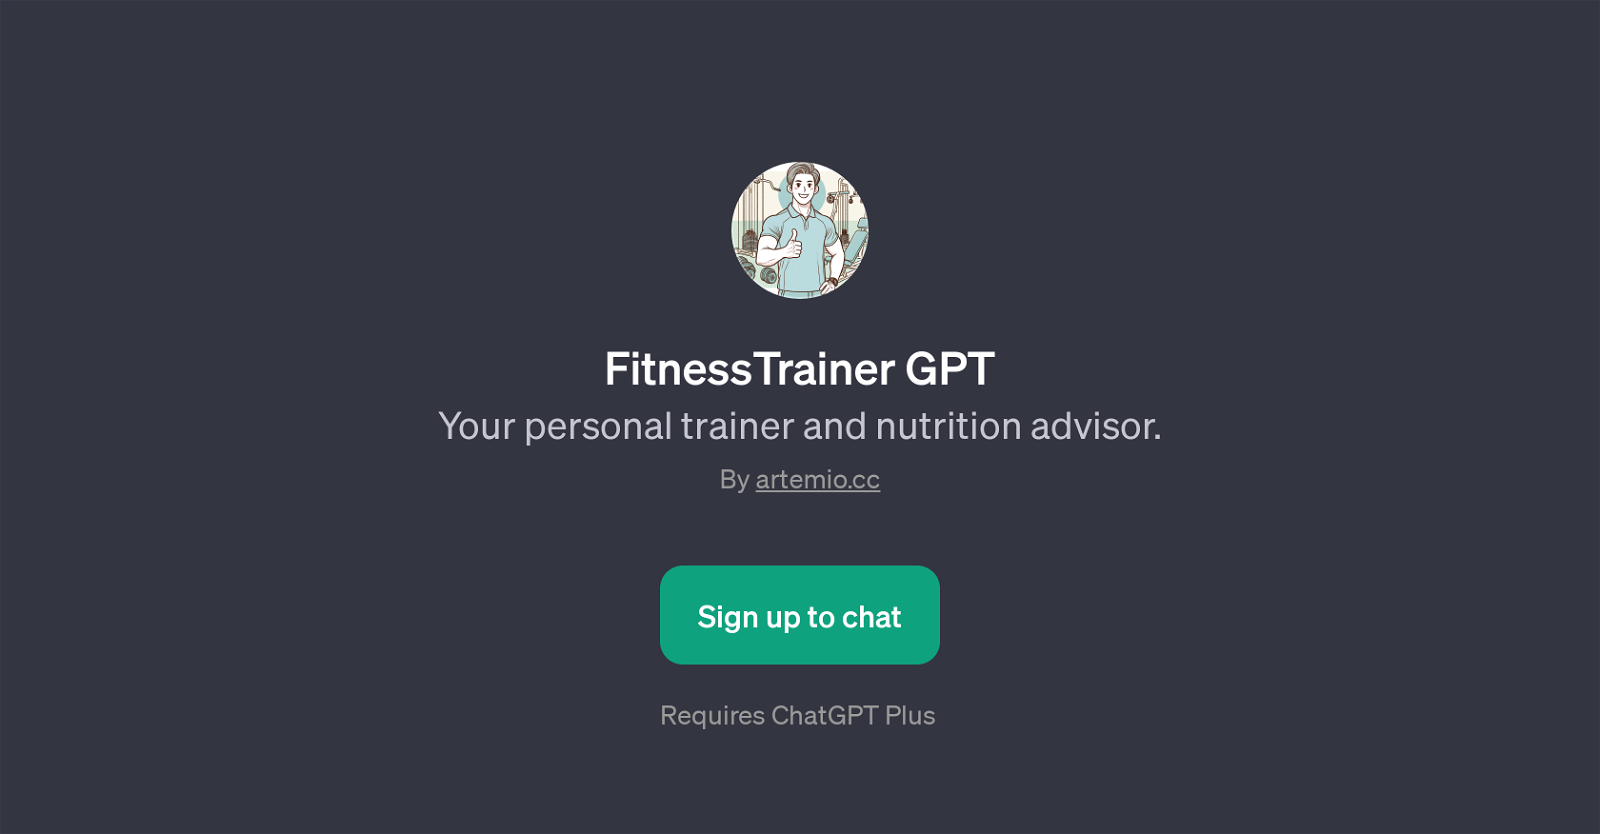 FitnessTrainer GPT website